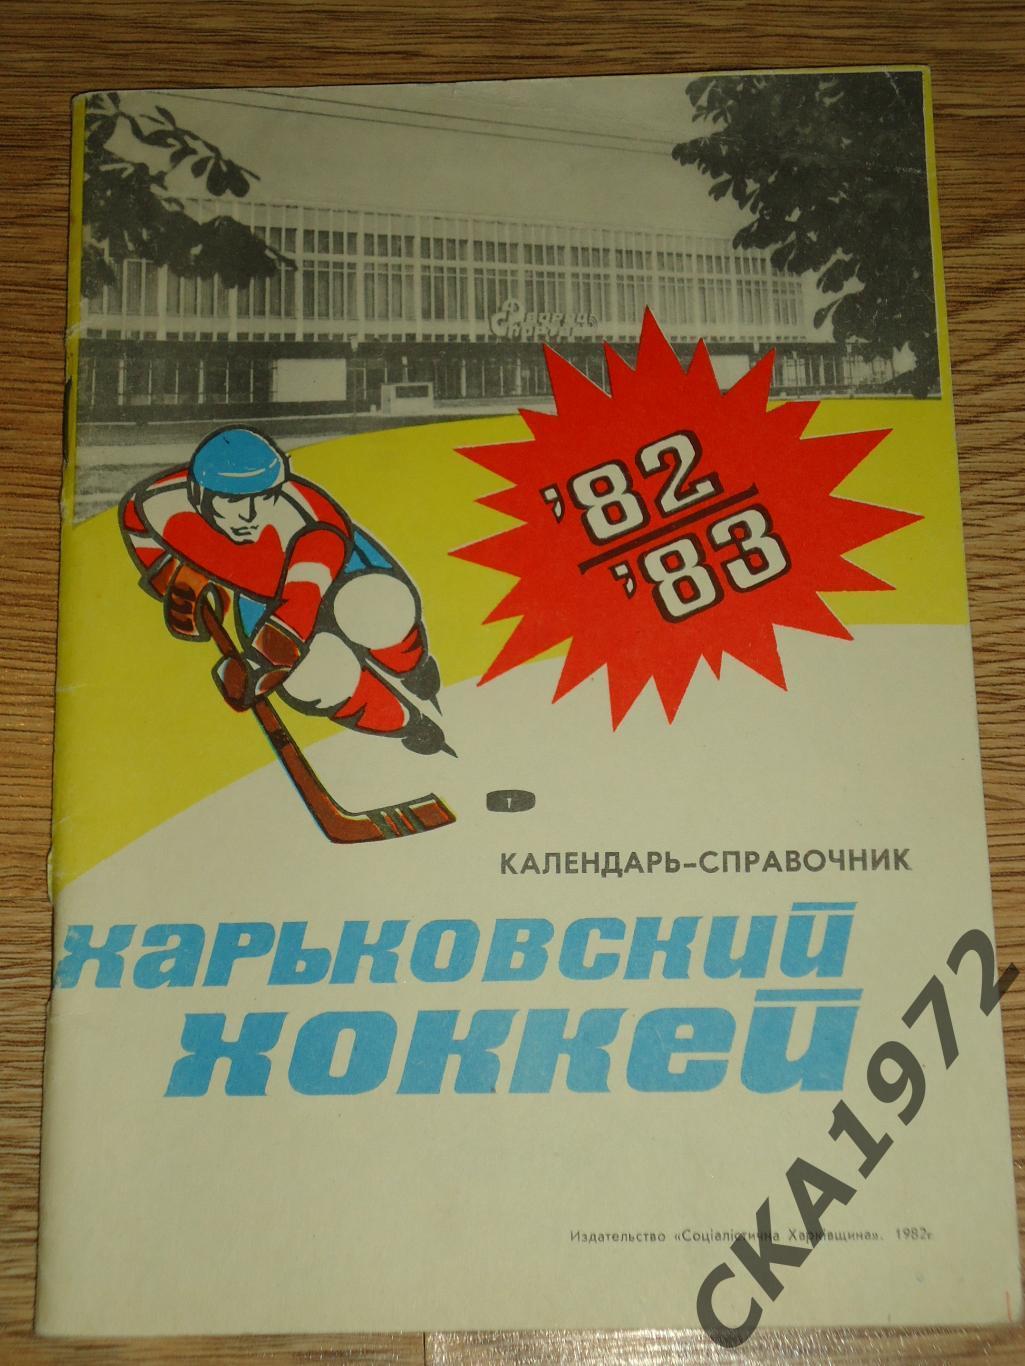 календарь справочник Хоккей Харьков 1982/83 +++